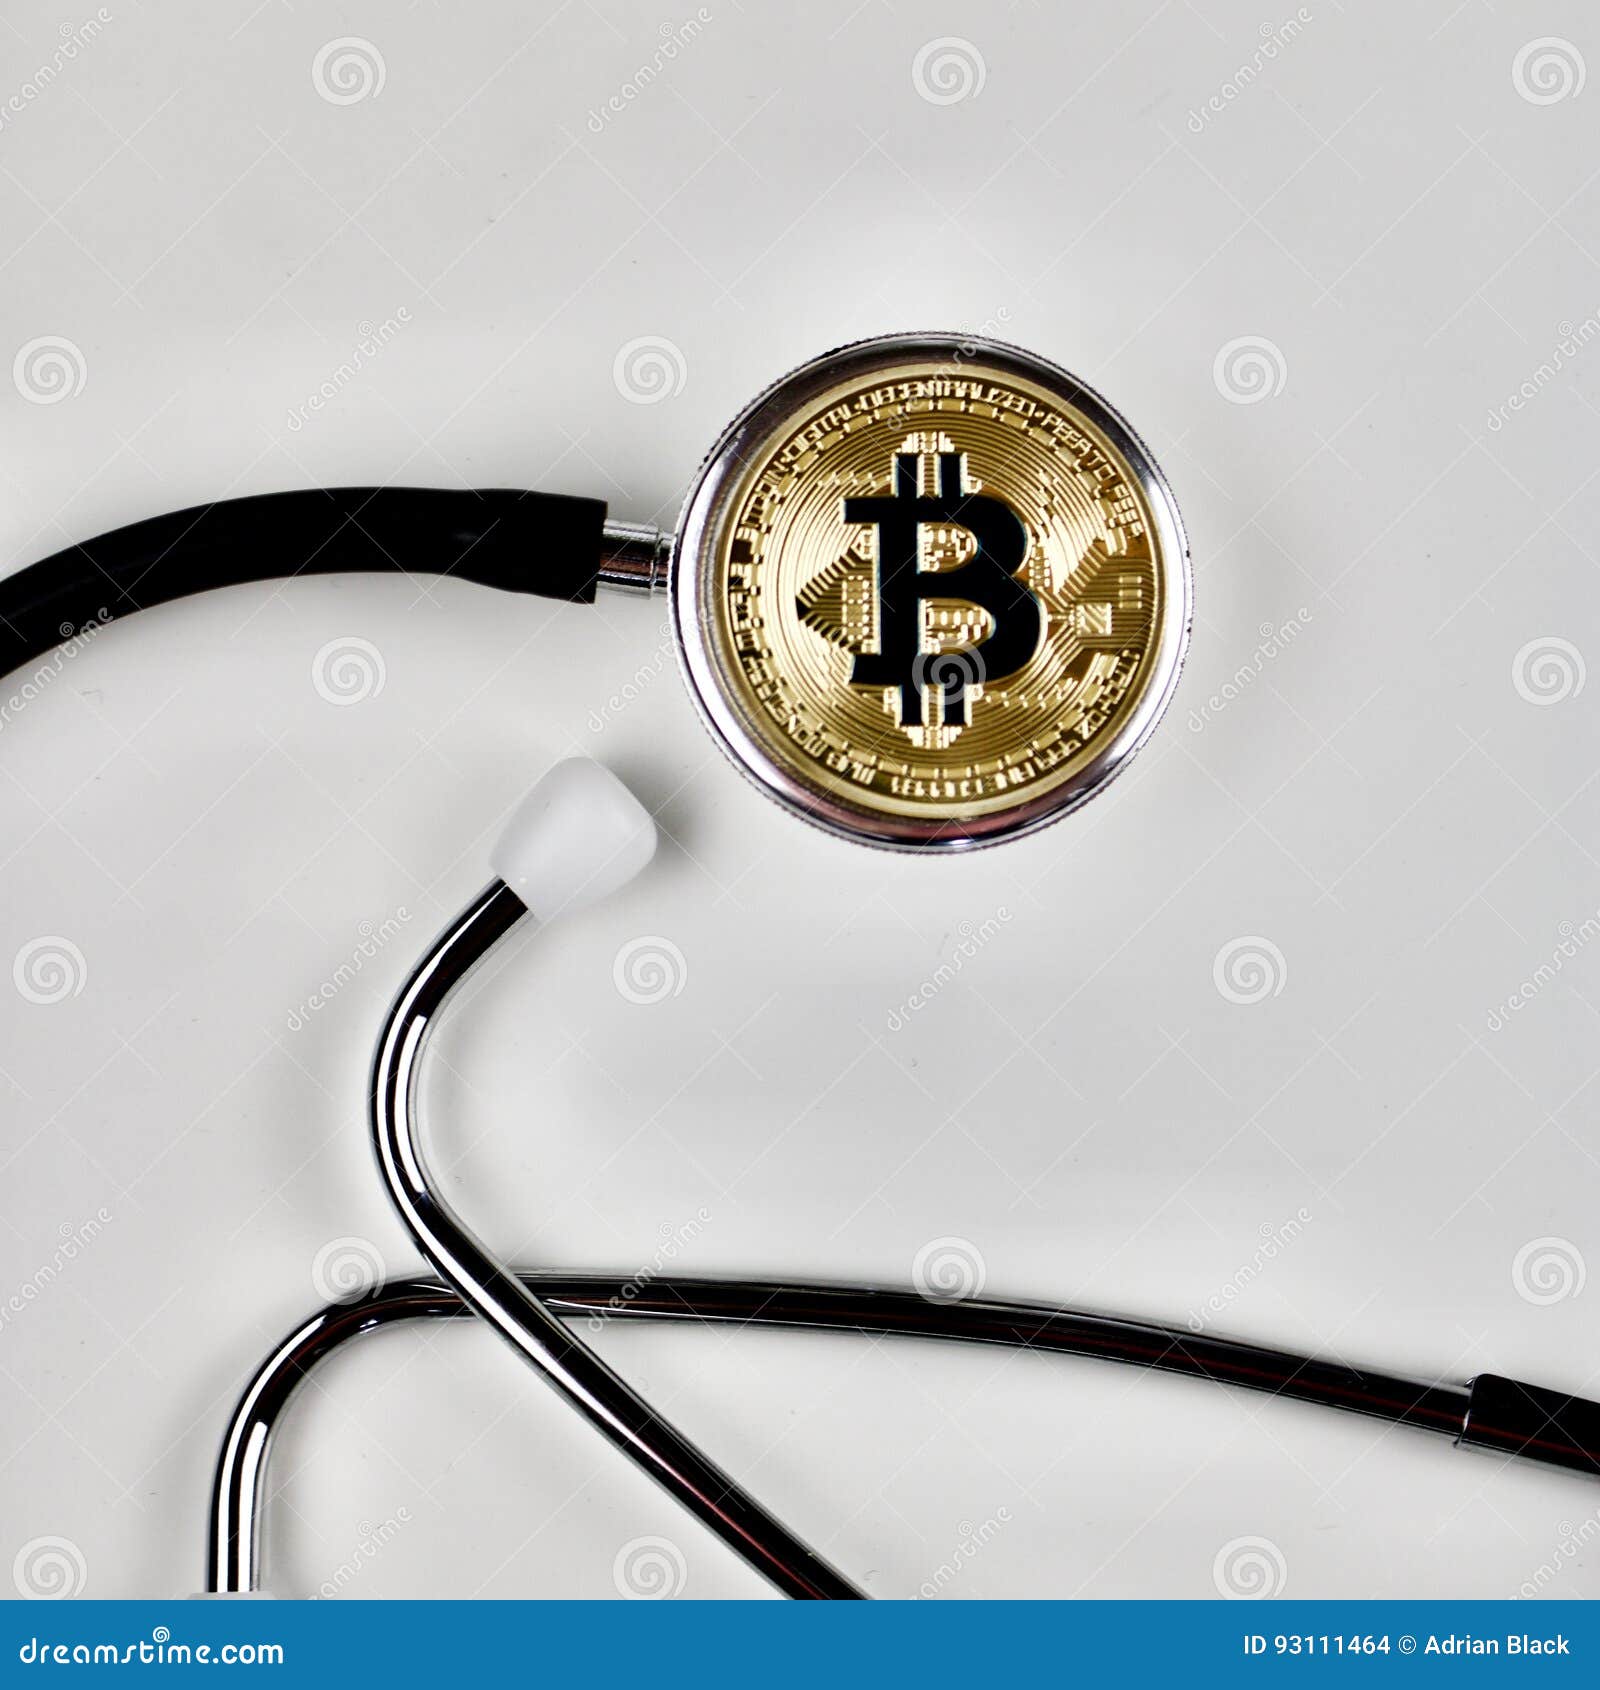 crypto medical coin